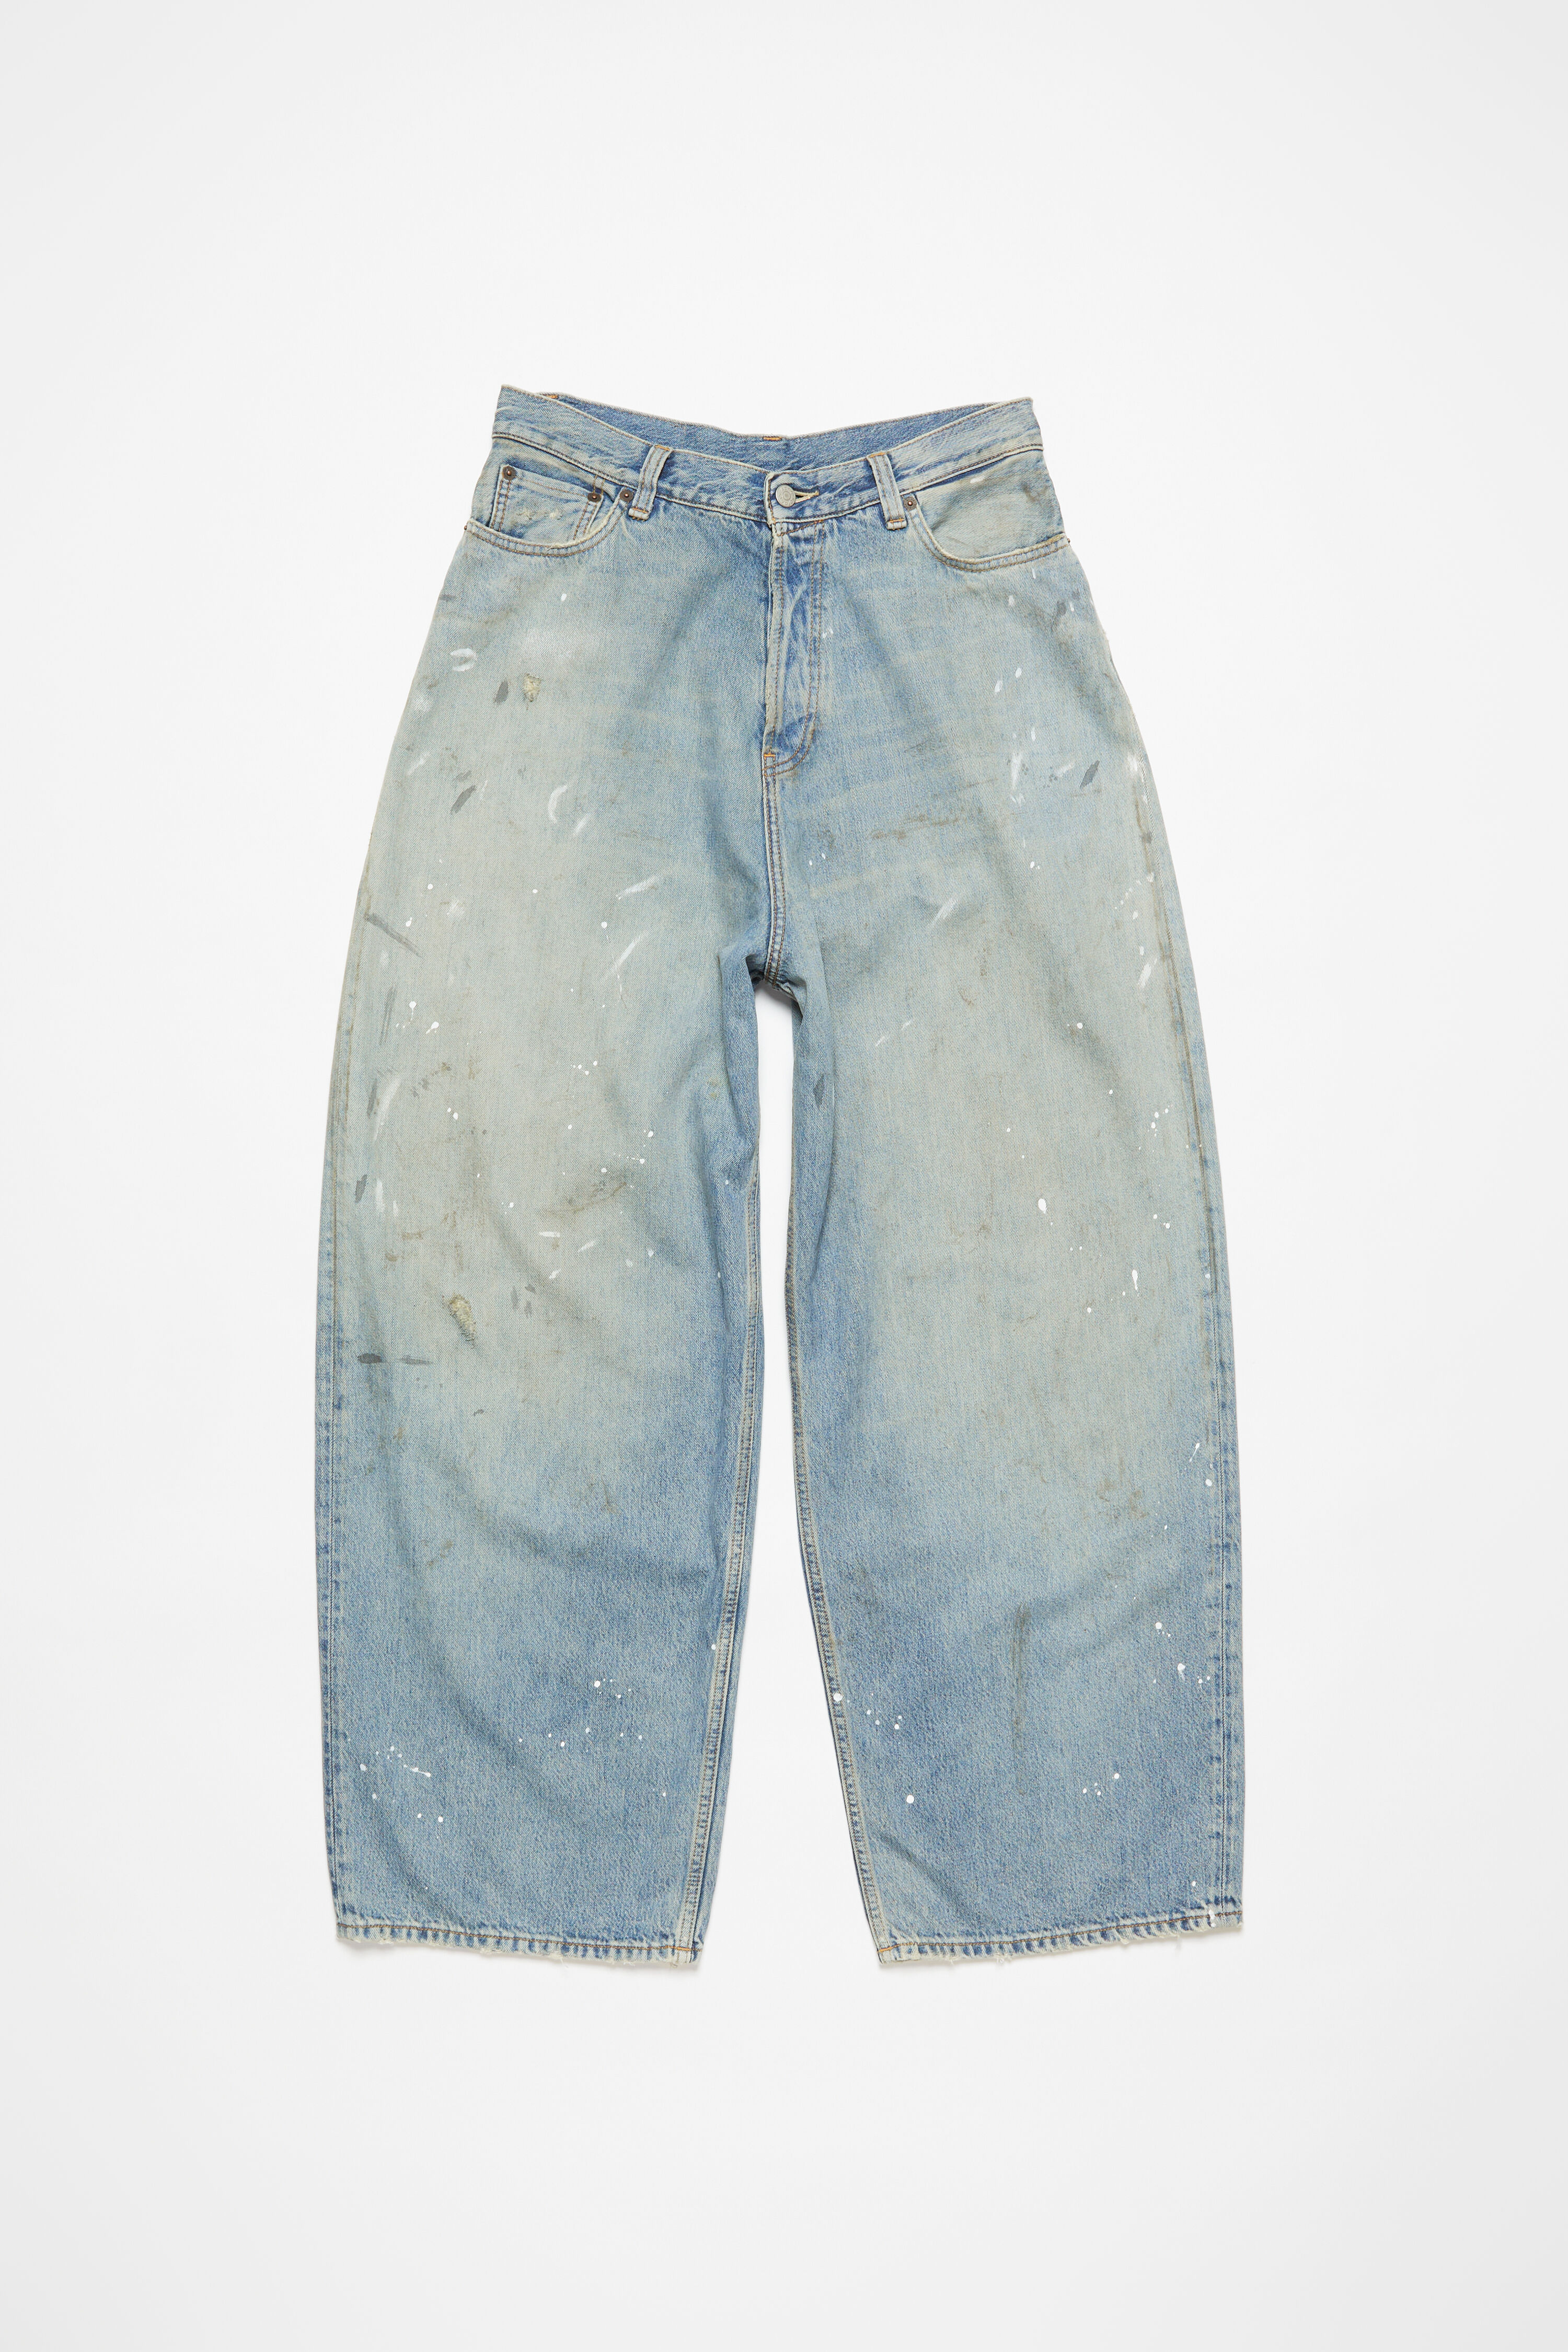 Acne Studios - Super baggy fit jeans - 2023F - Light blue